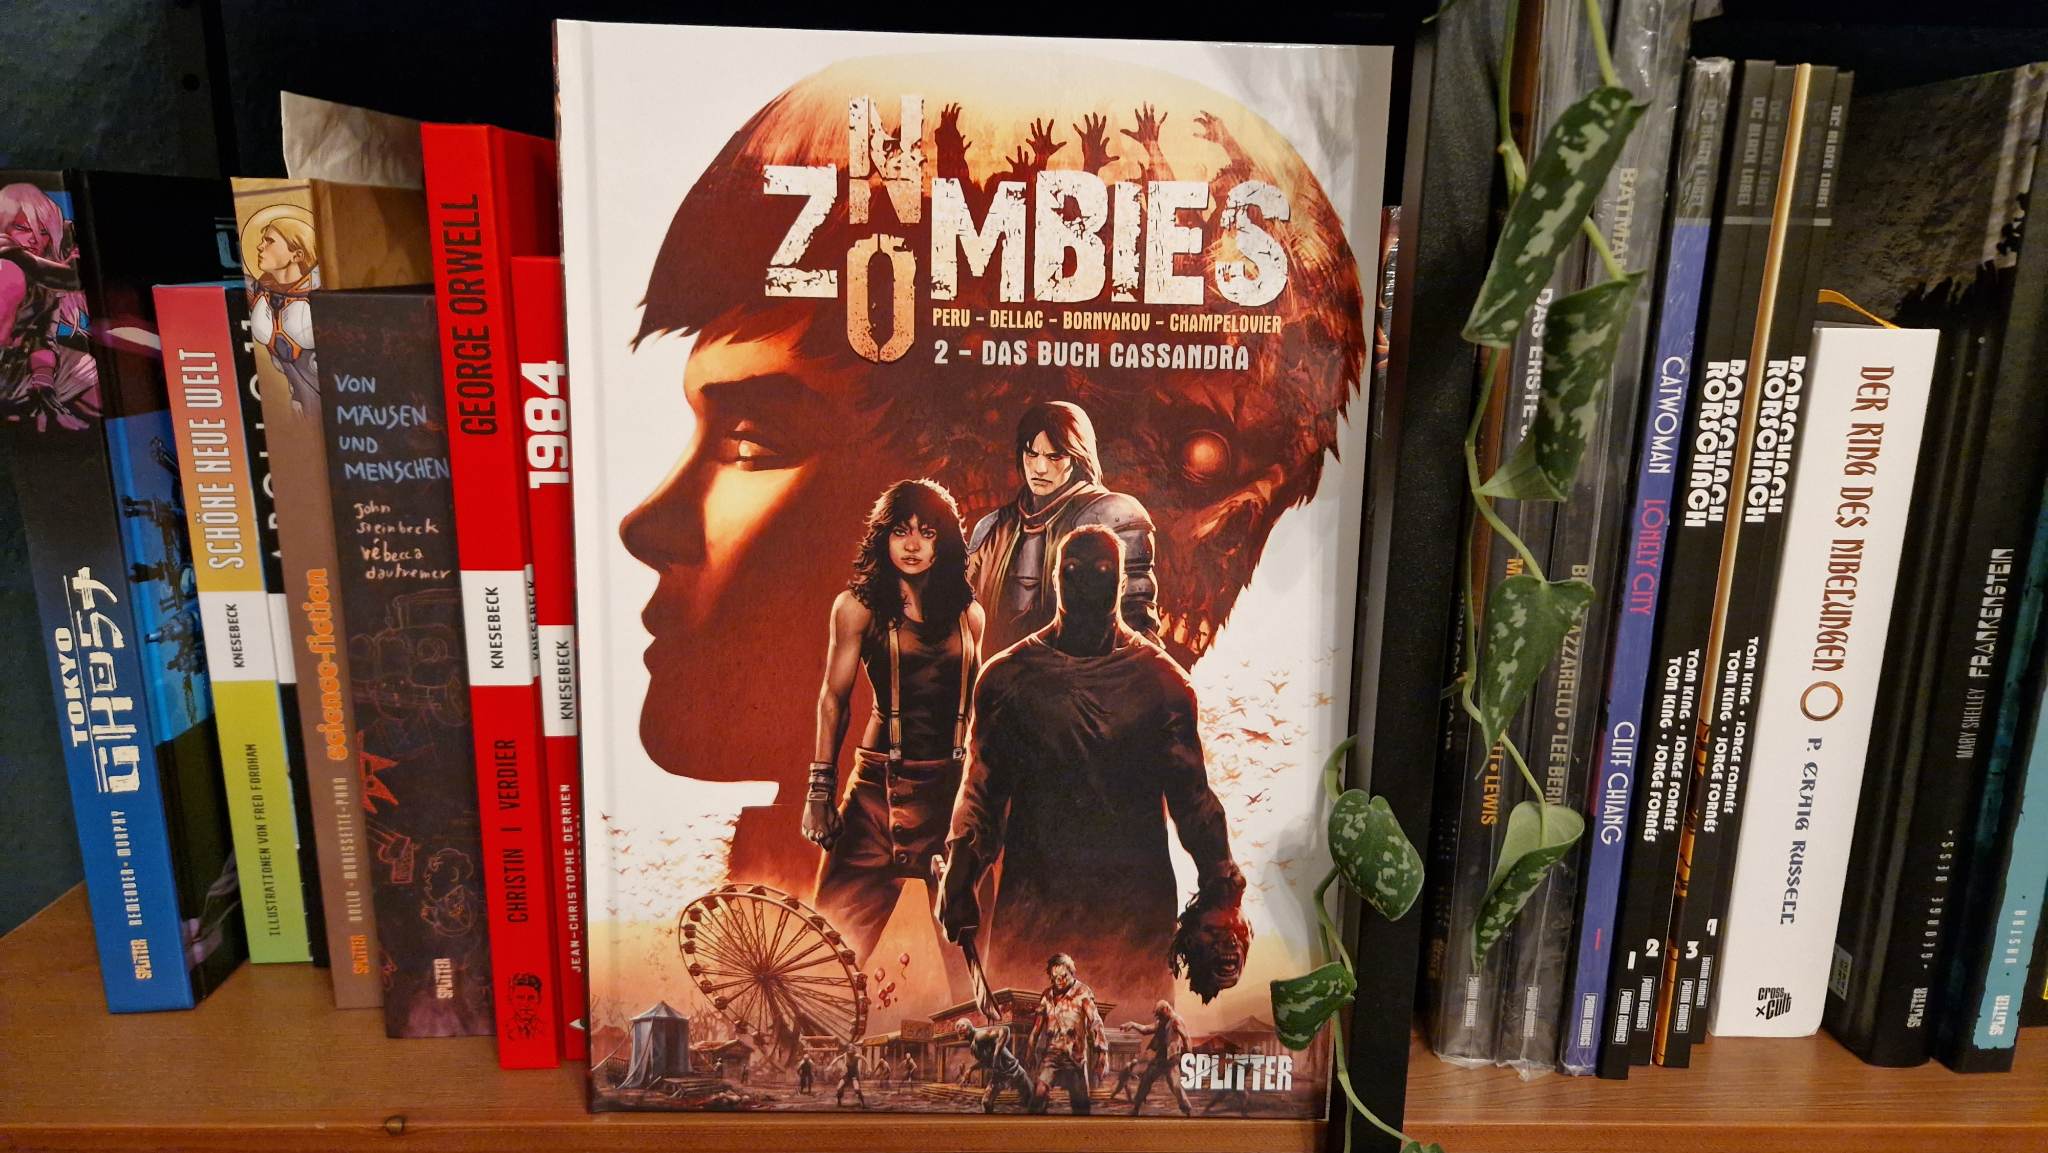 No Zombies 2: Das Buch Cassandra Beitragsbild